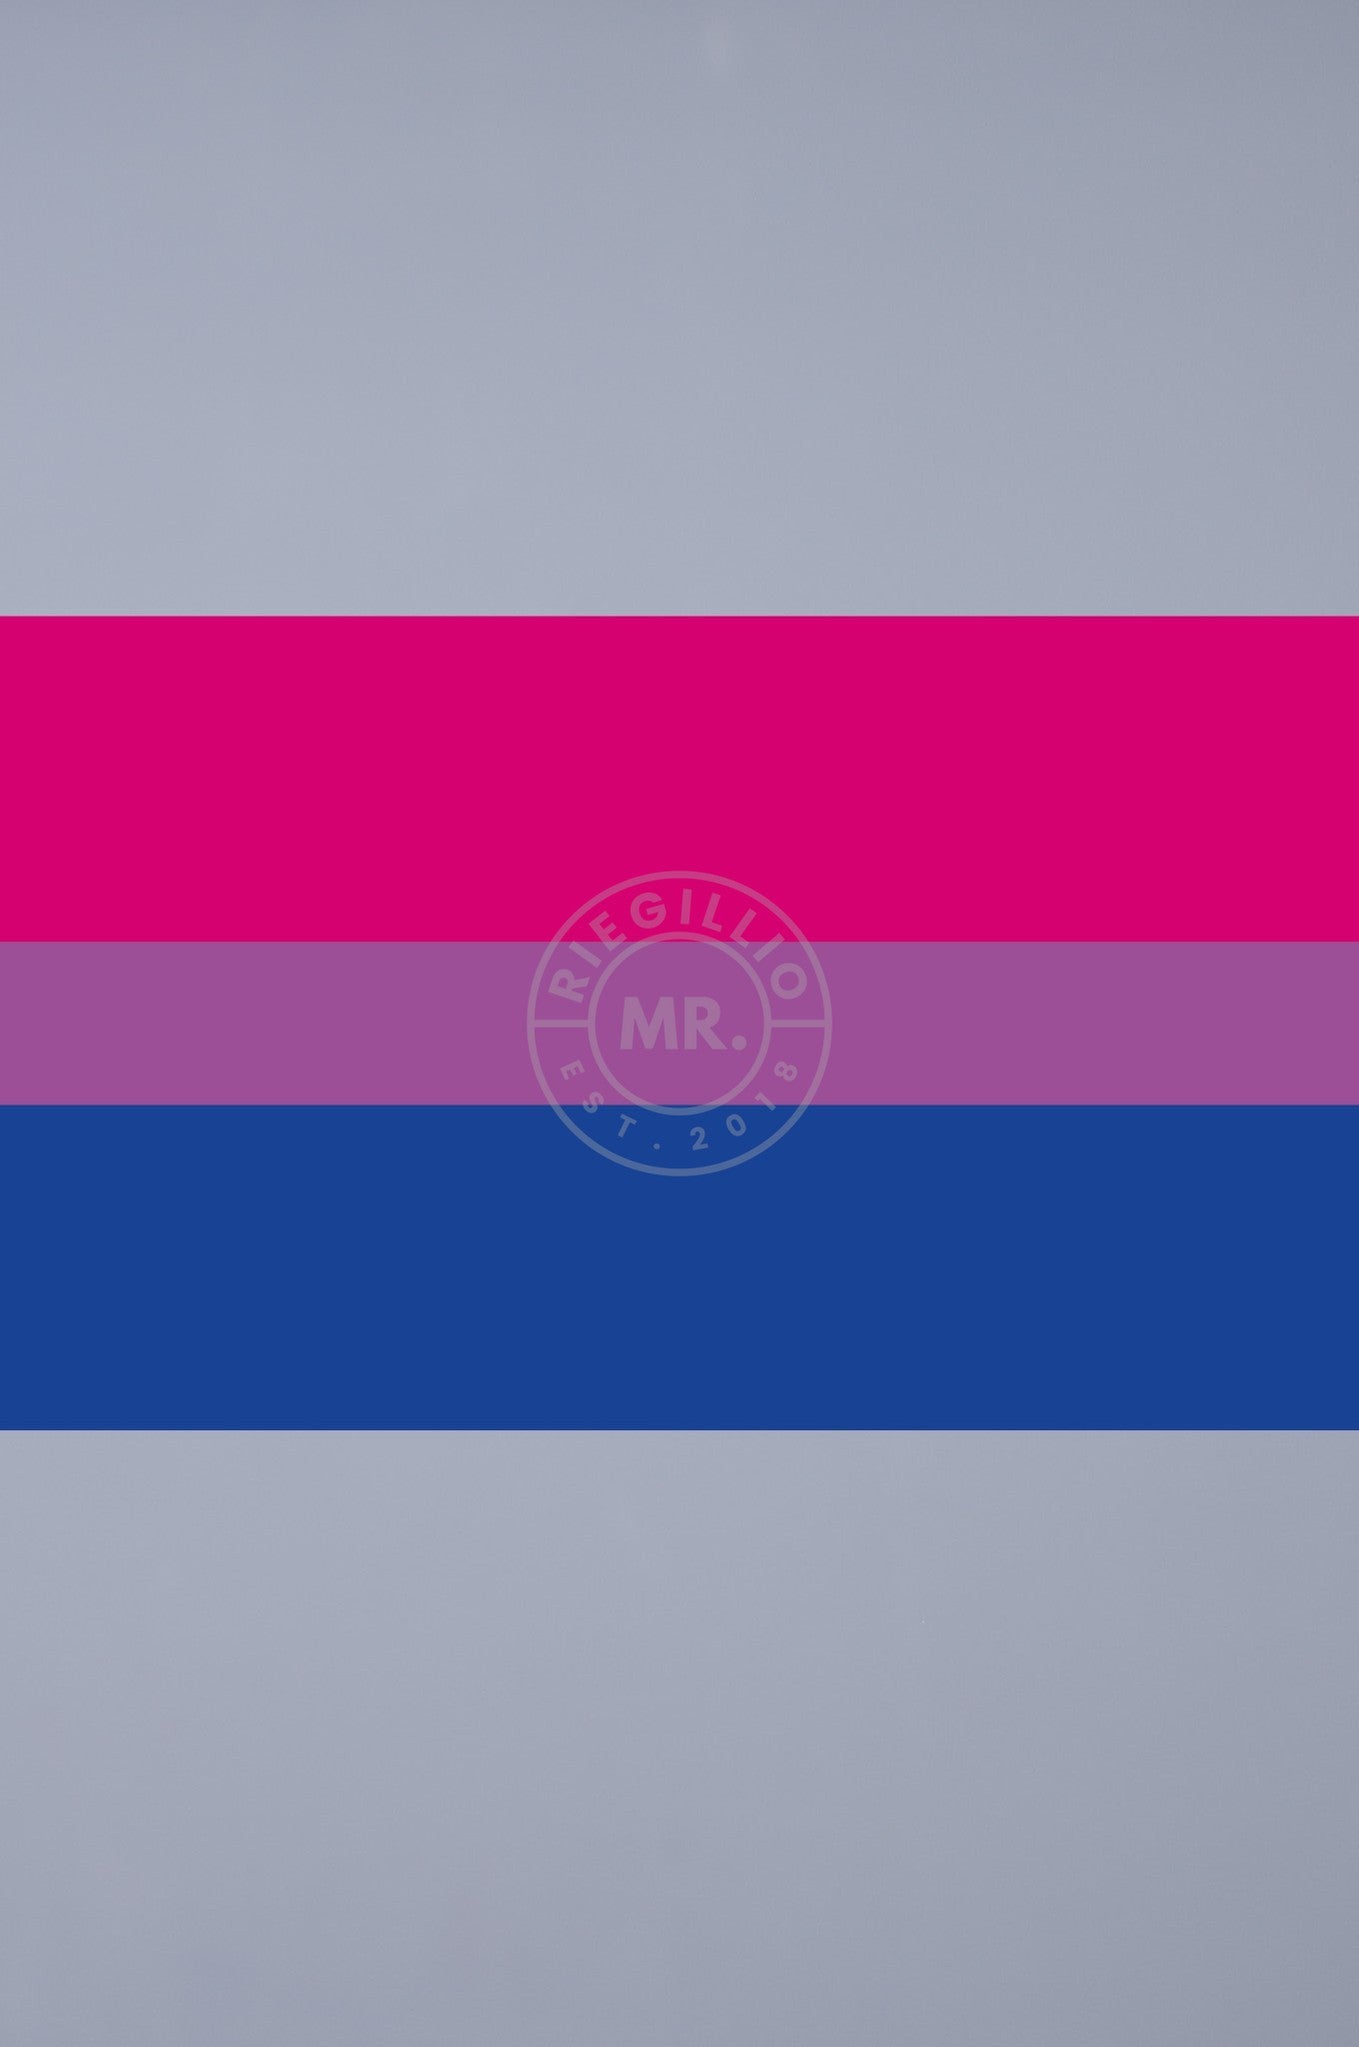 Pride Flag - Bisexual - 90 x 150 cm at MR. Riegillio